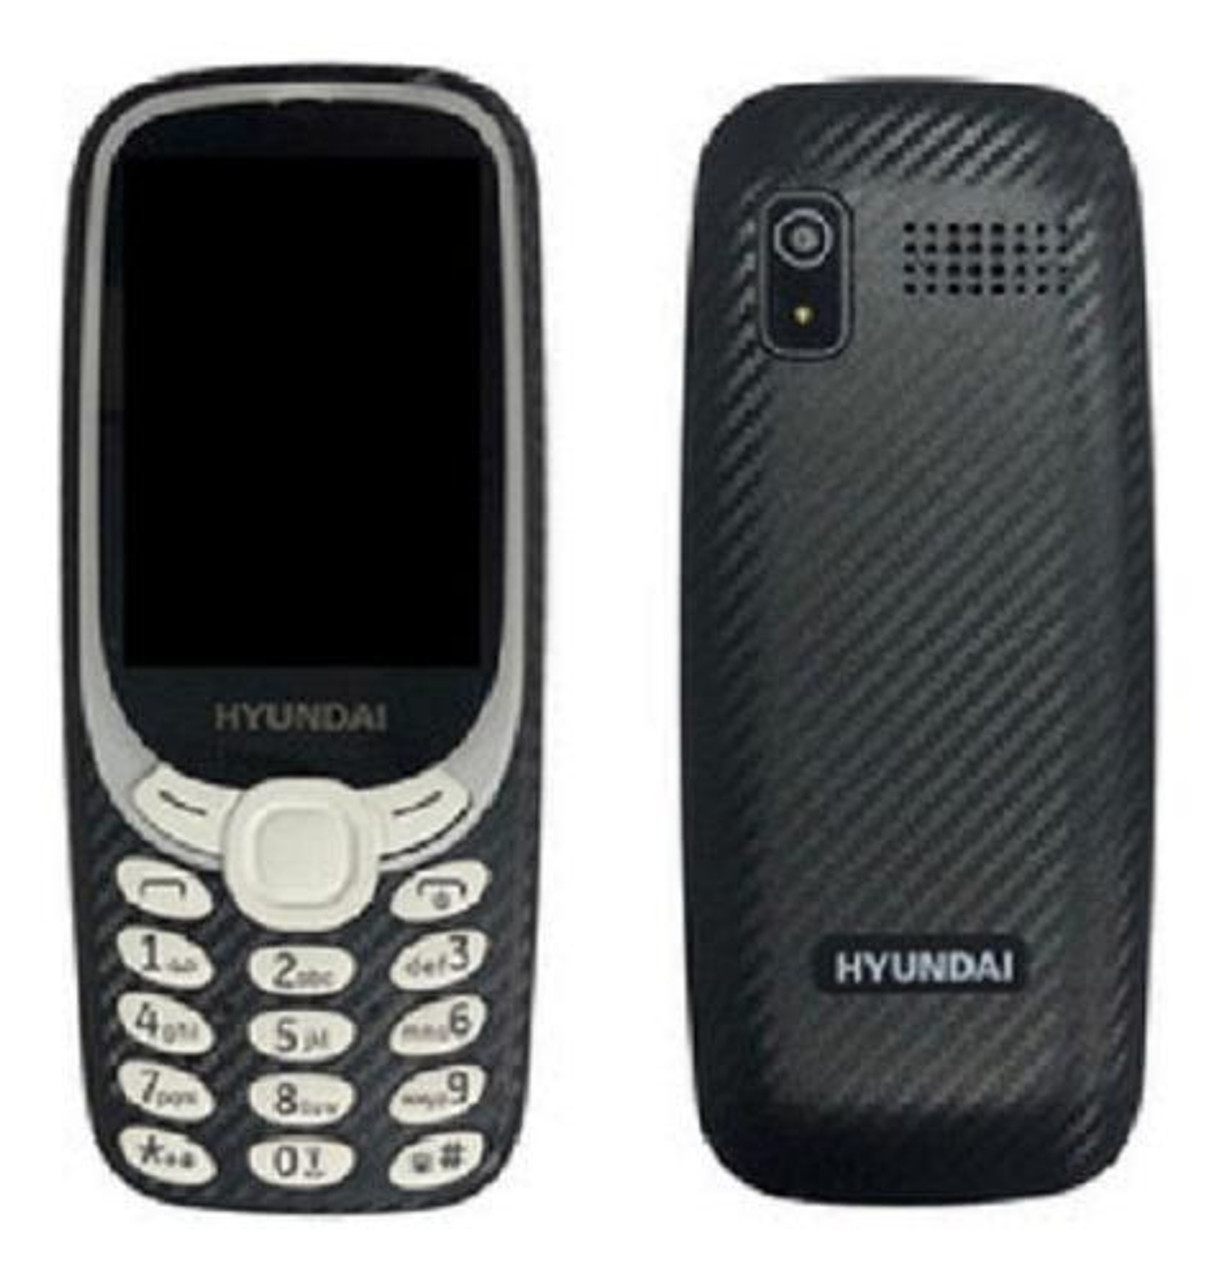 Hyundai L300 Button 4G Phone , Dual SIM  1x2MP, 2.4" Unlocked  Black - *In Store